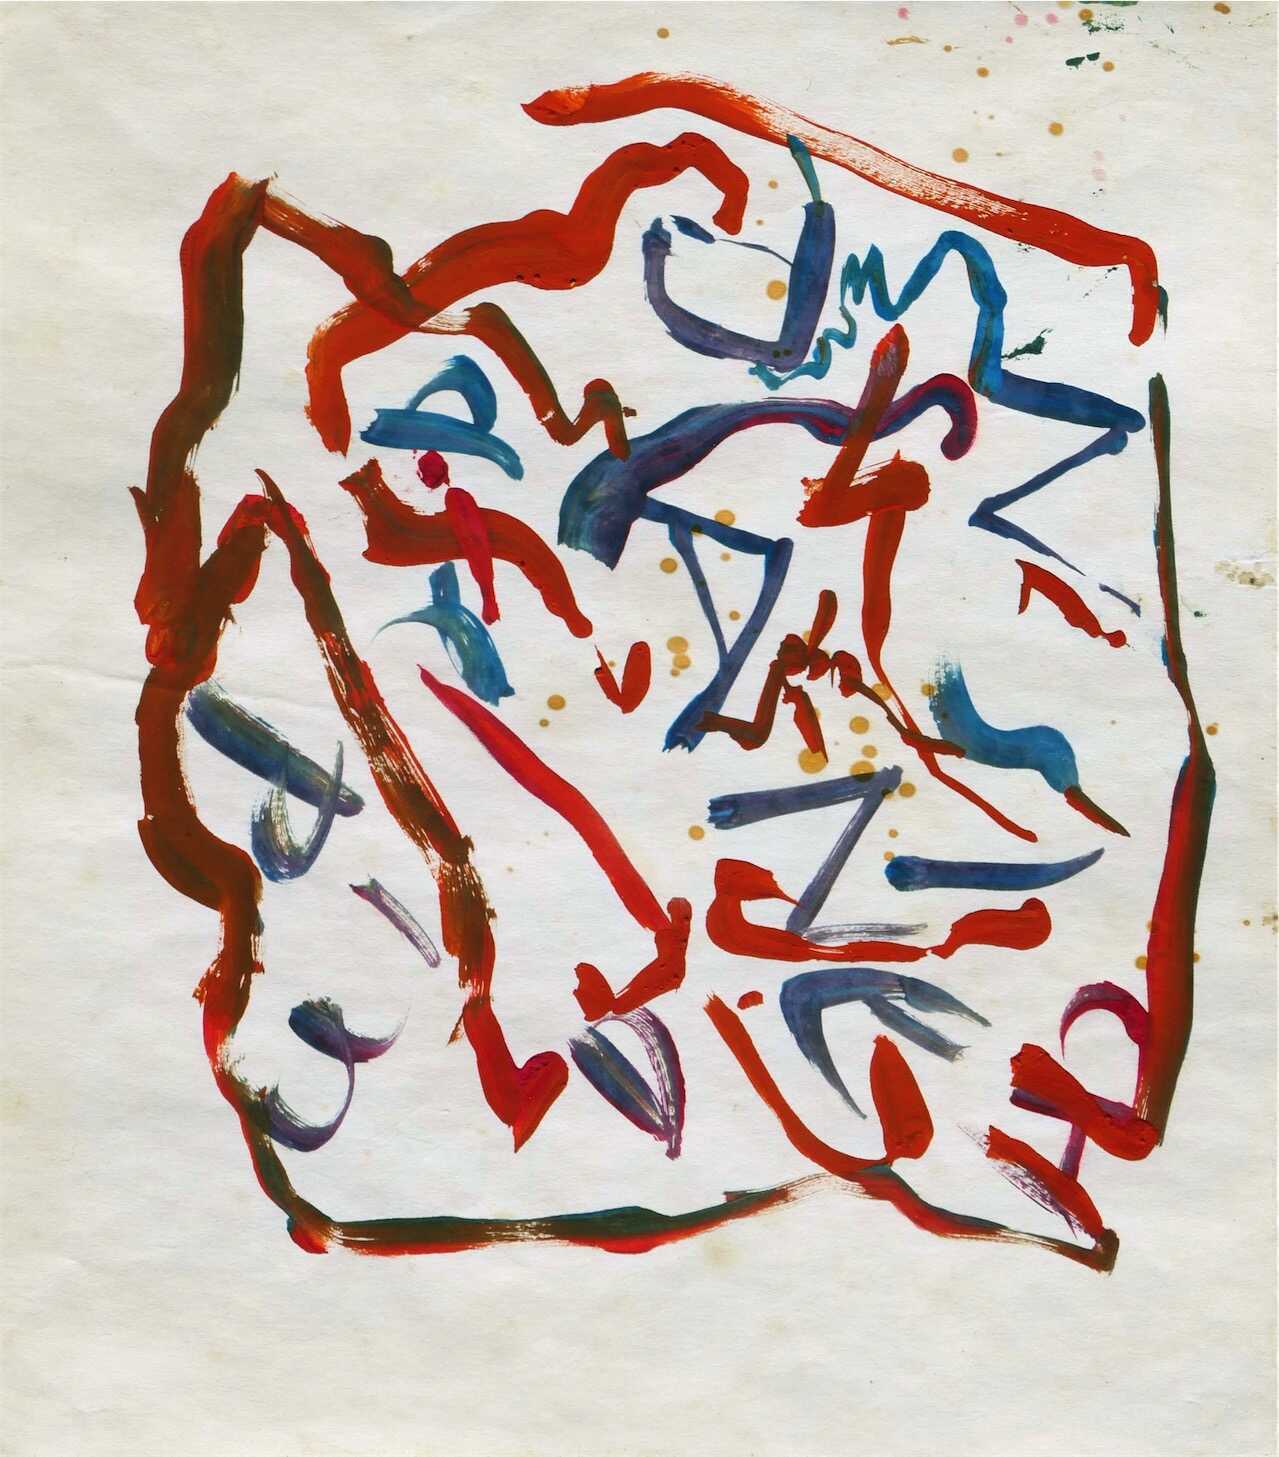 Sans titre, 1985 gouache sur papier 27,5 x 23,8 cm